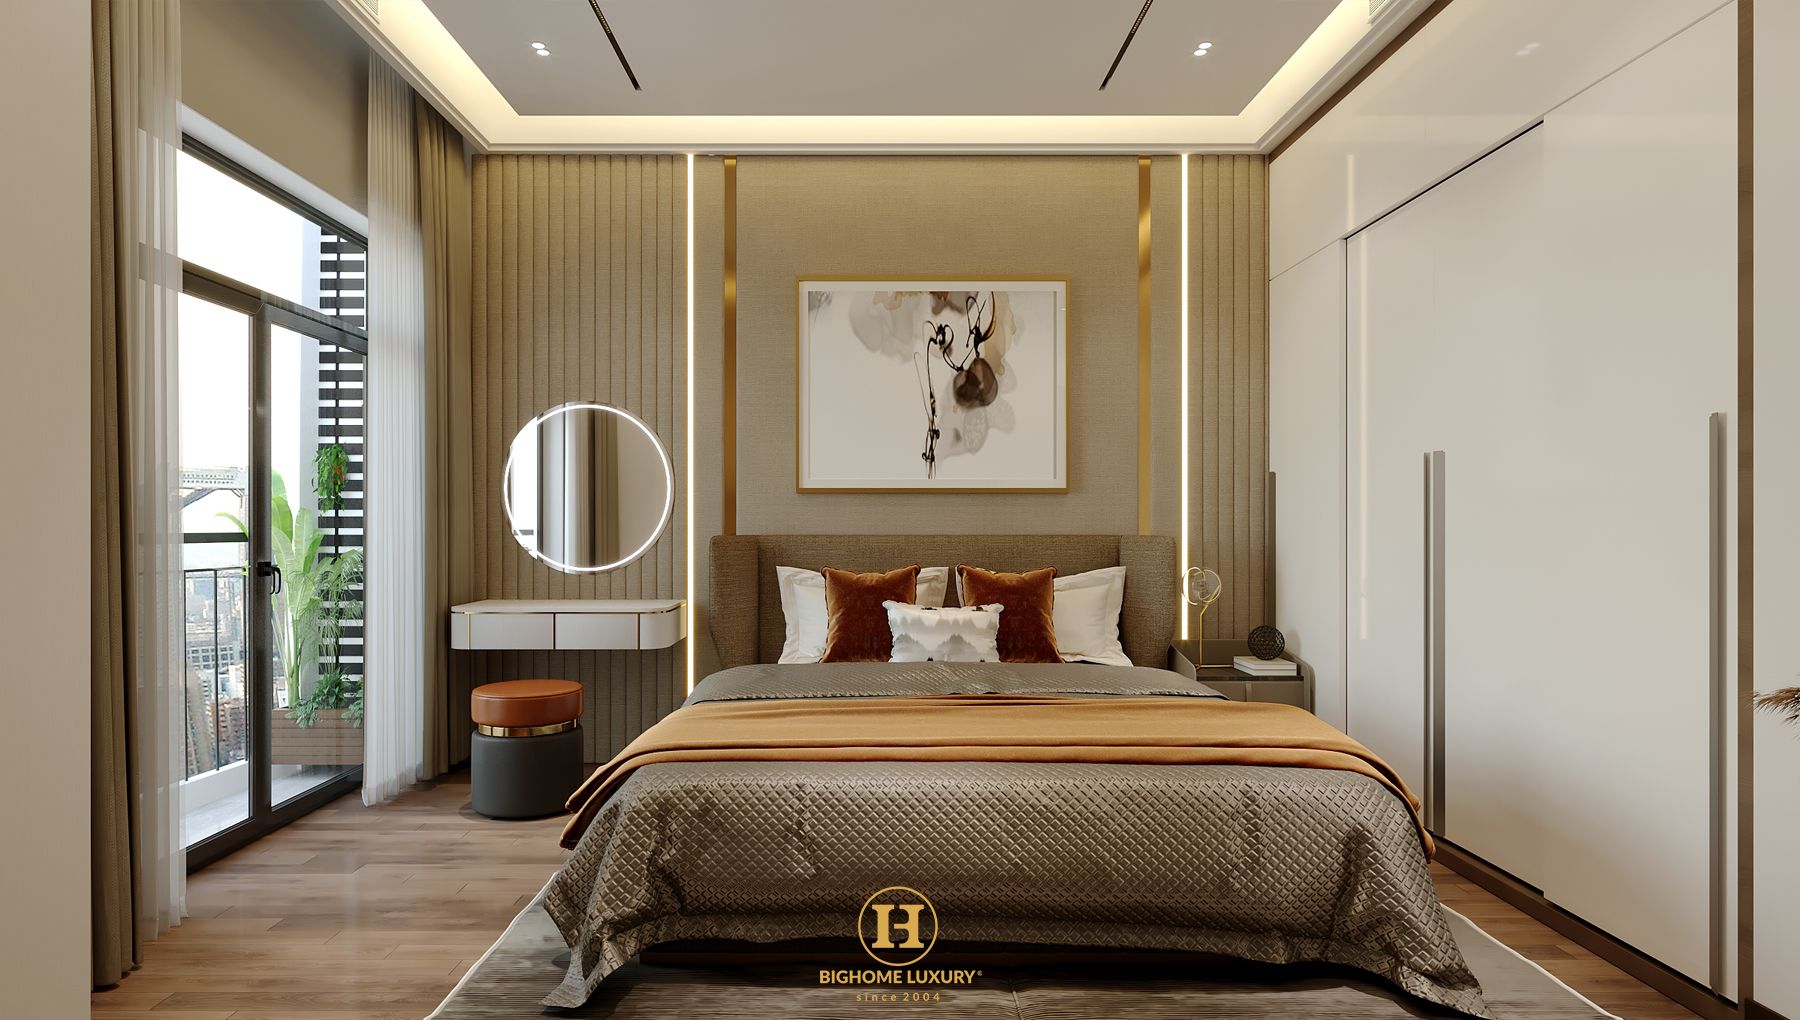 Chi tiết nội thất phòng ngủ master luxury tại Louis Hoang Mai